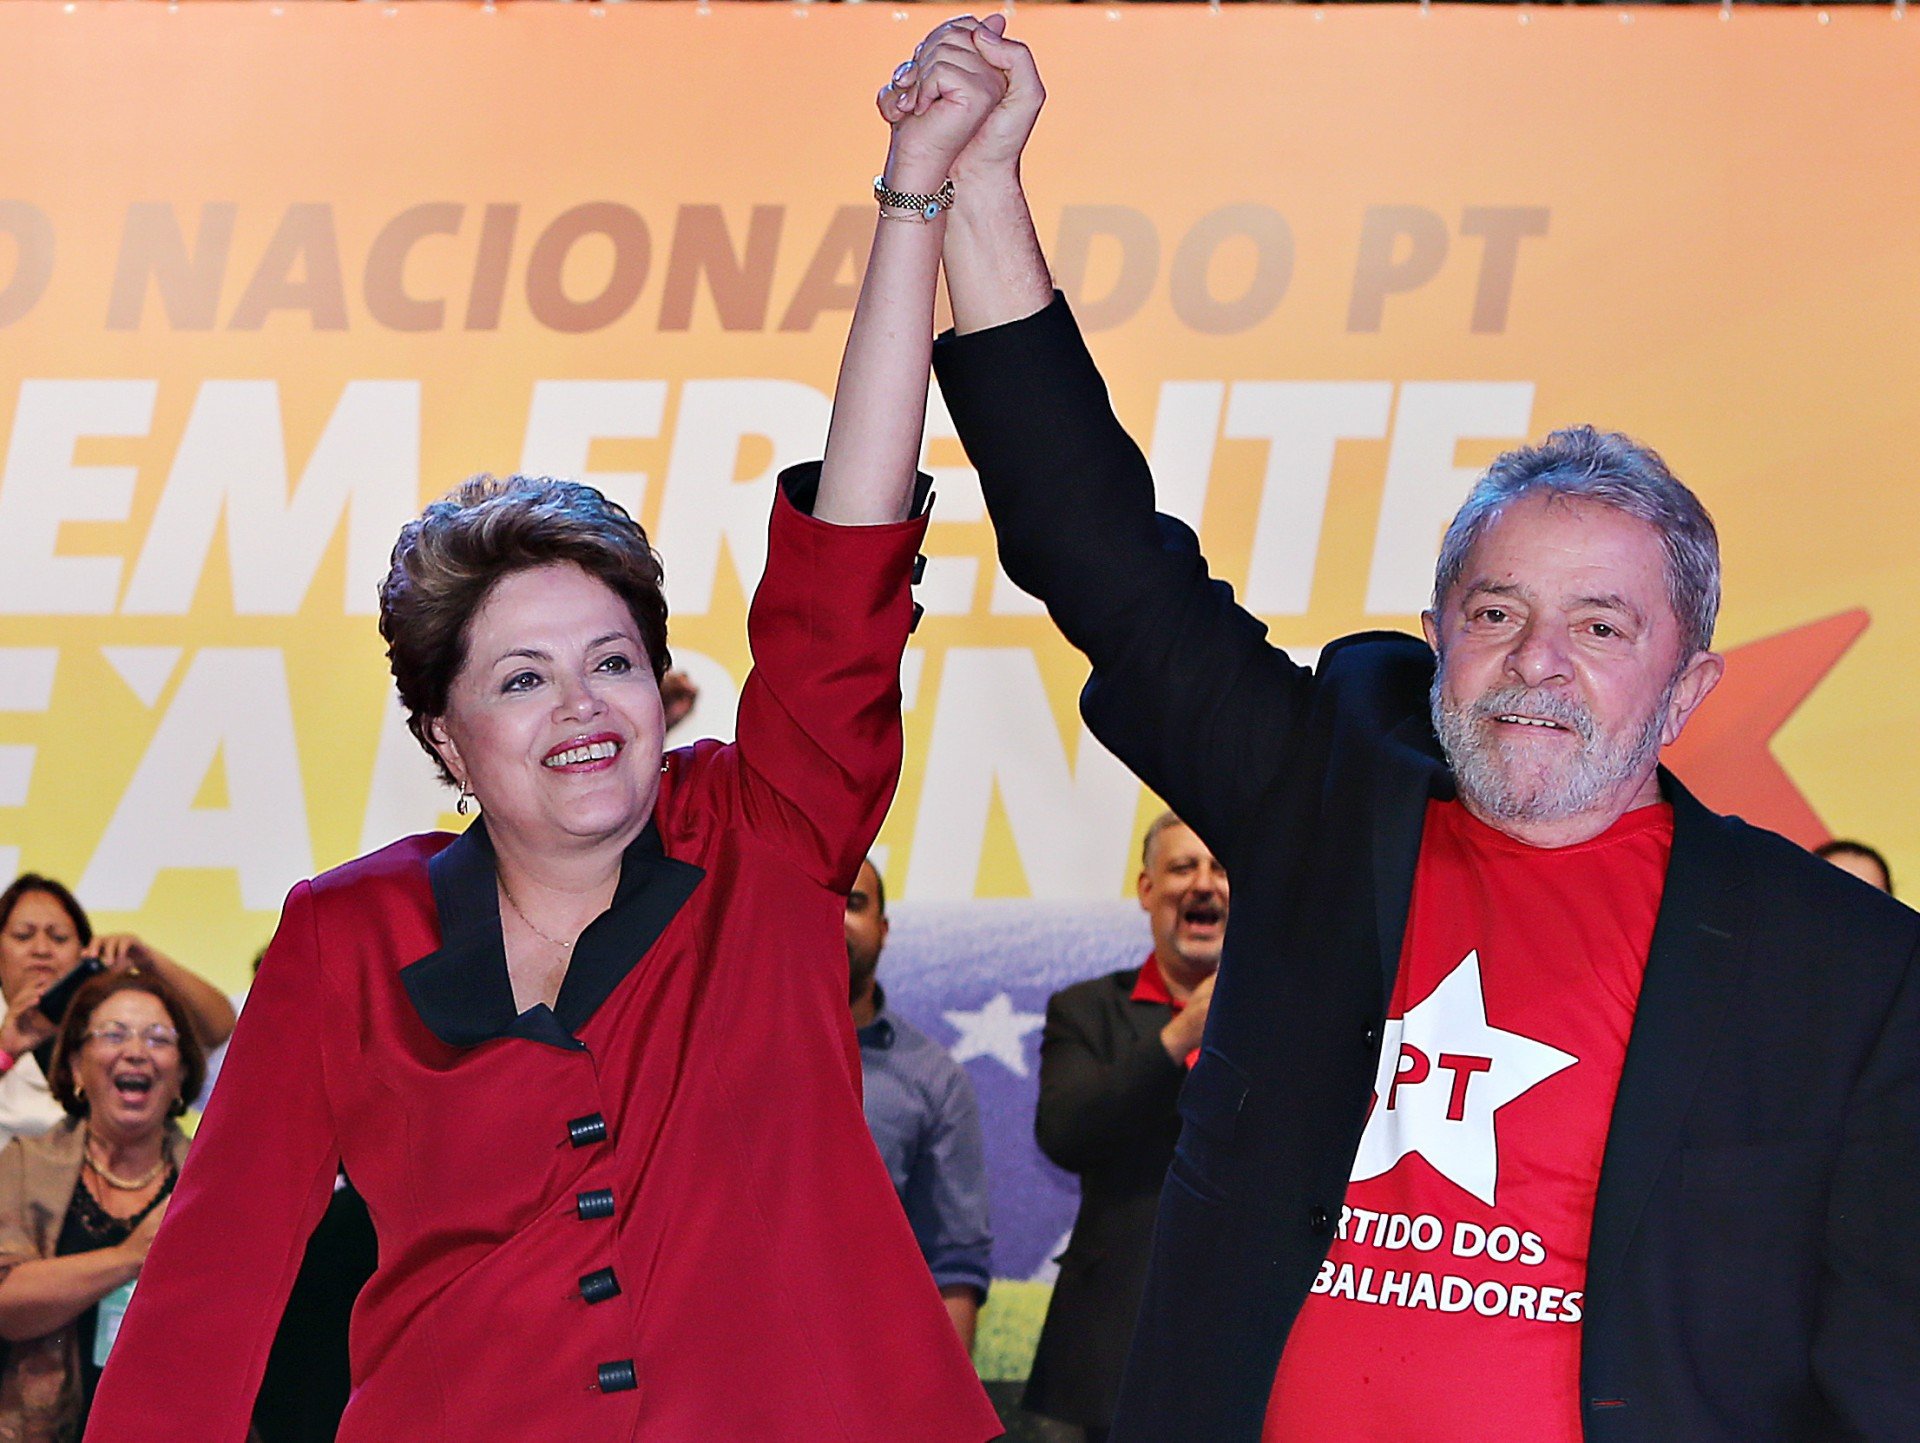 Veja: Delação de Palocci aponta que eleições de Lula e Dilma receberam propina